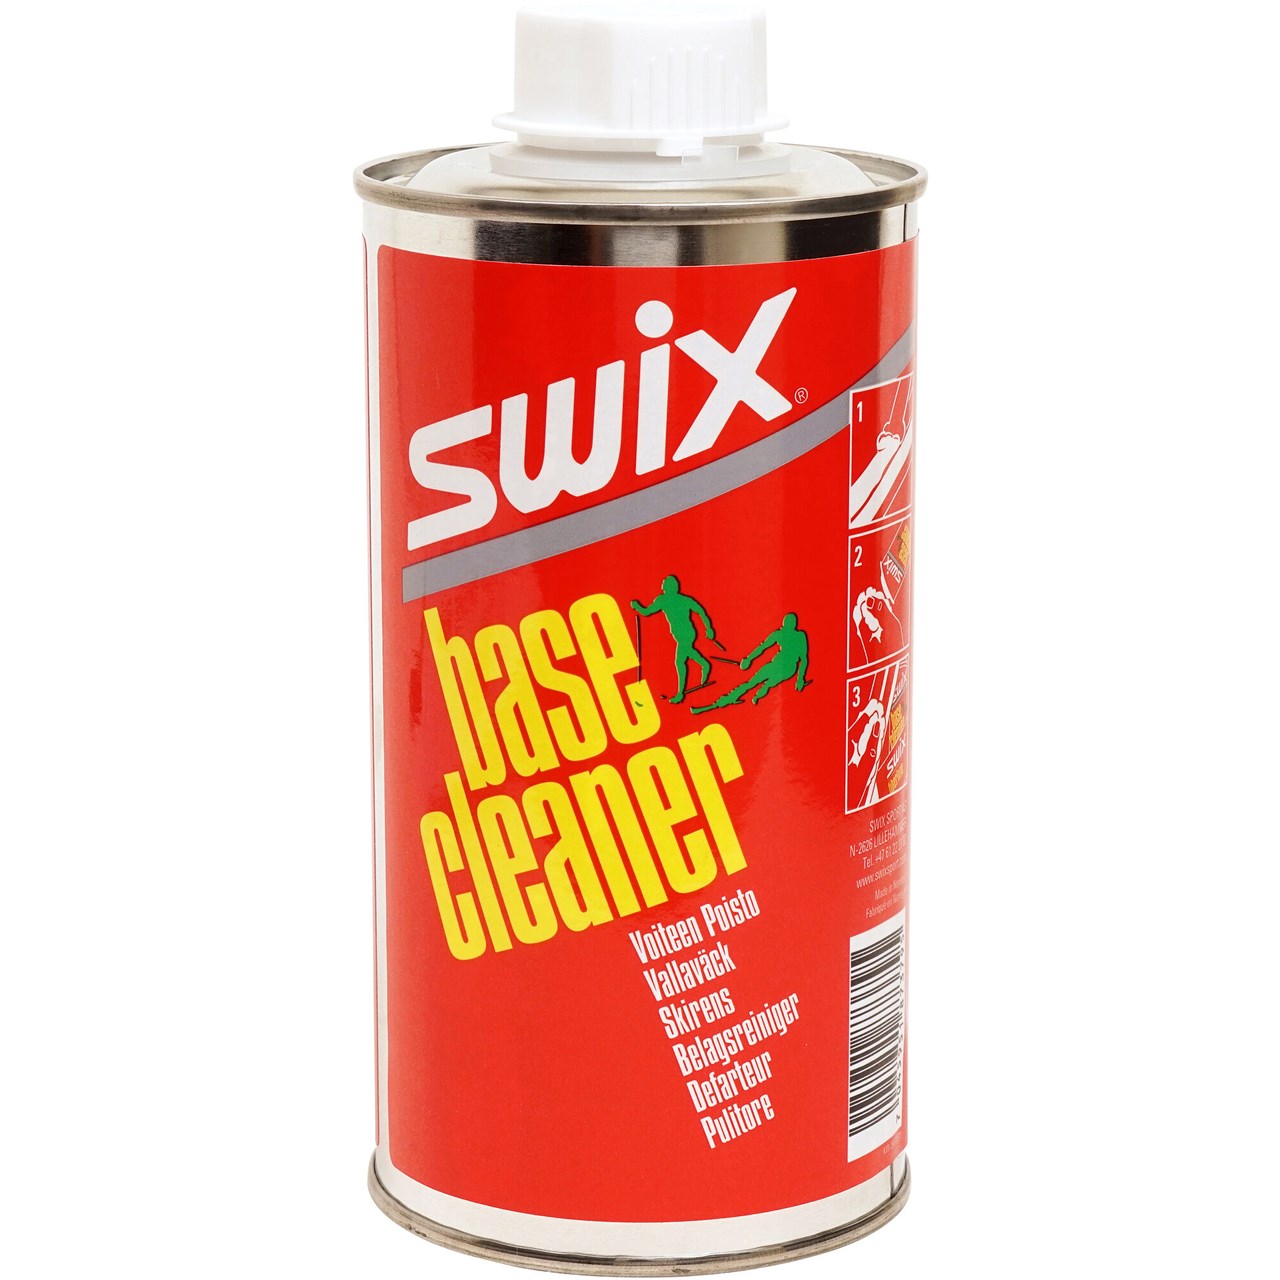 Swix Base cleaner I64C 500ml